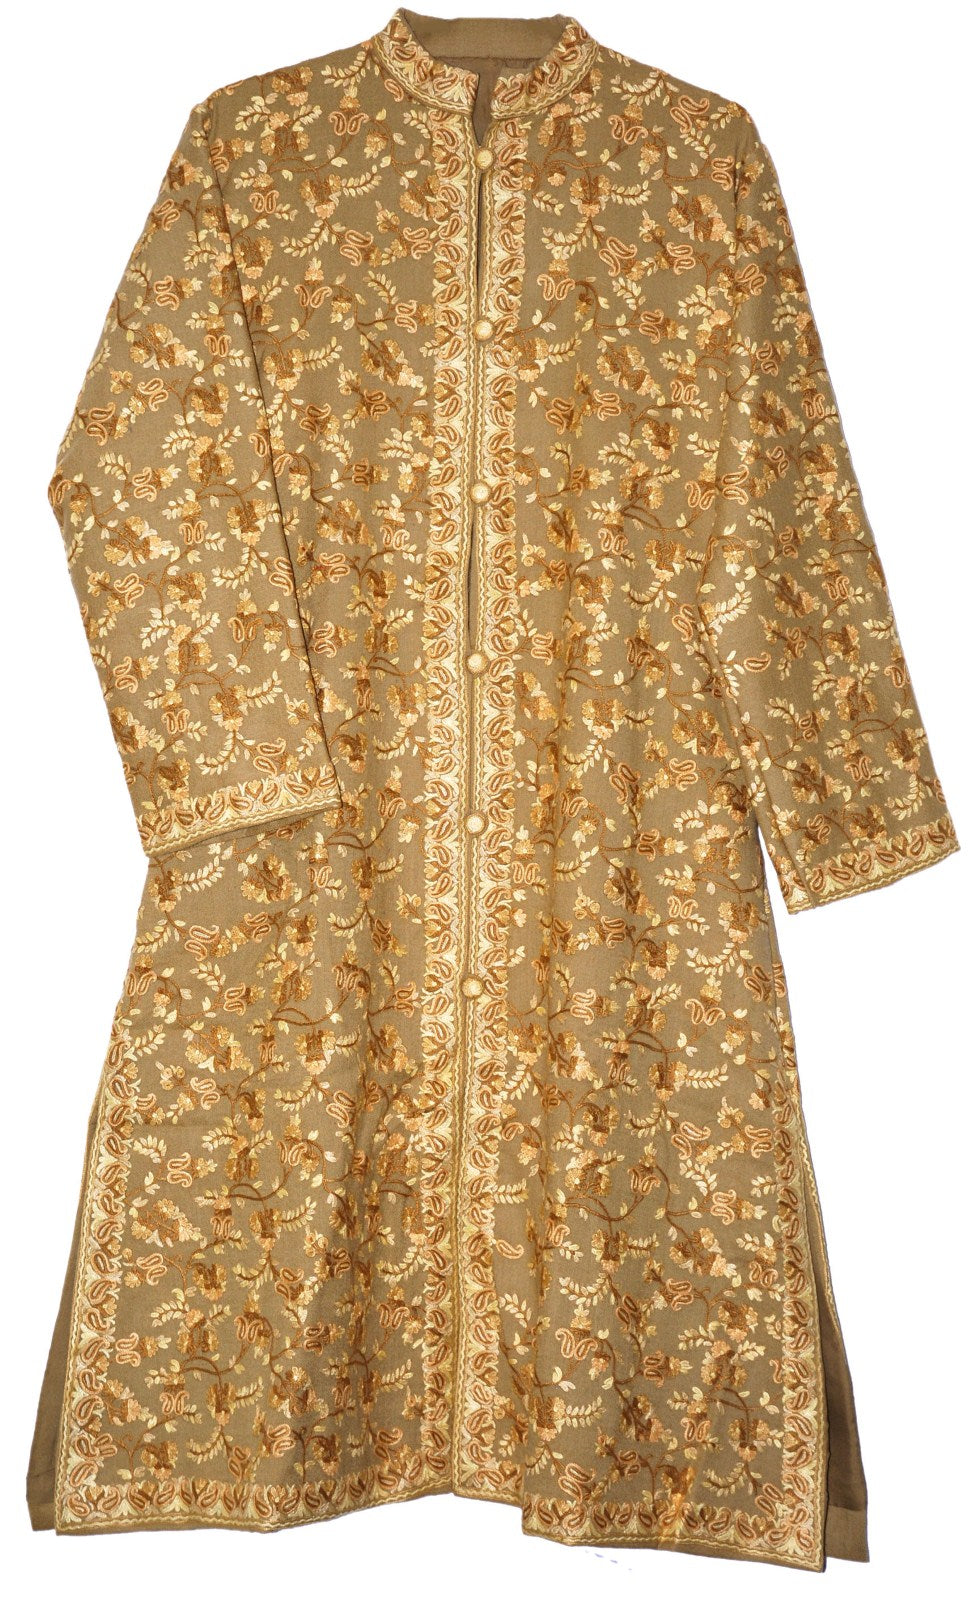 Kashmir Ethnic Silk Coat Long Jacket Gold, Multicolor, 54% OFF